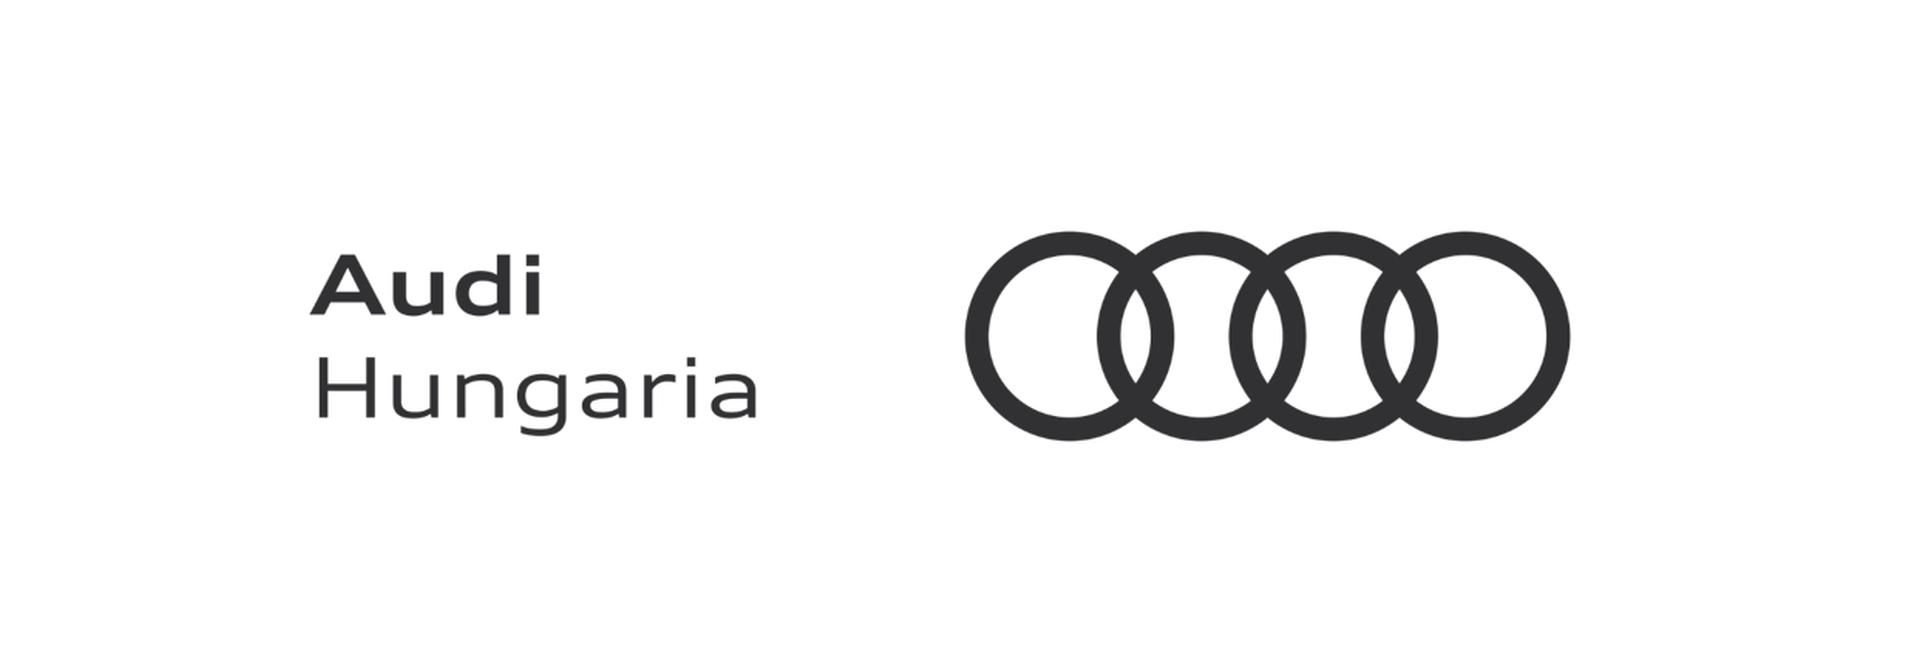 Az Audi a győri szerszámgyár bővítésébe kezd - VIDEÓRIPORT